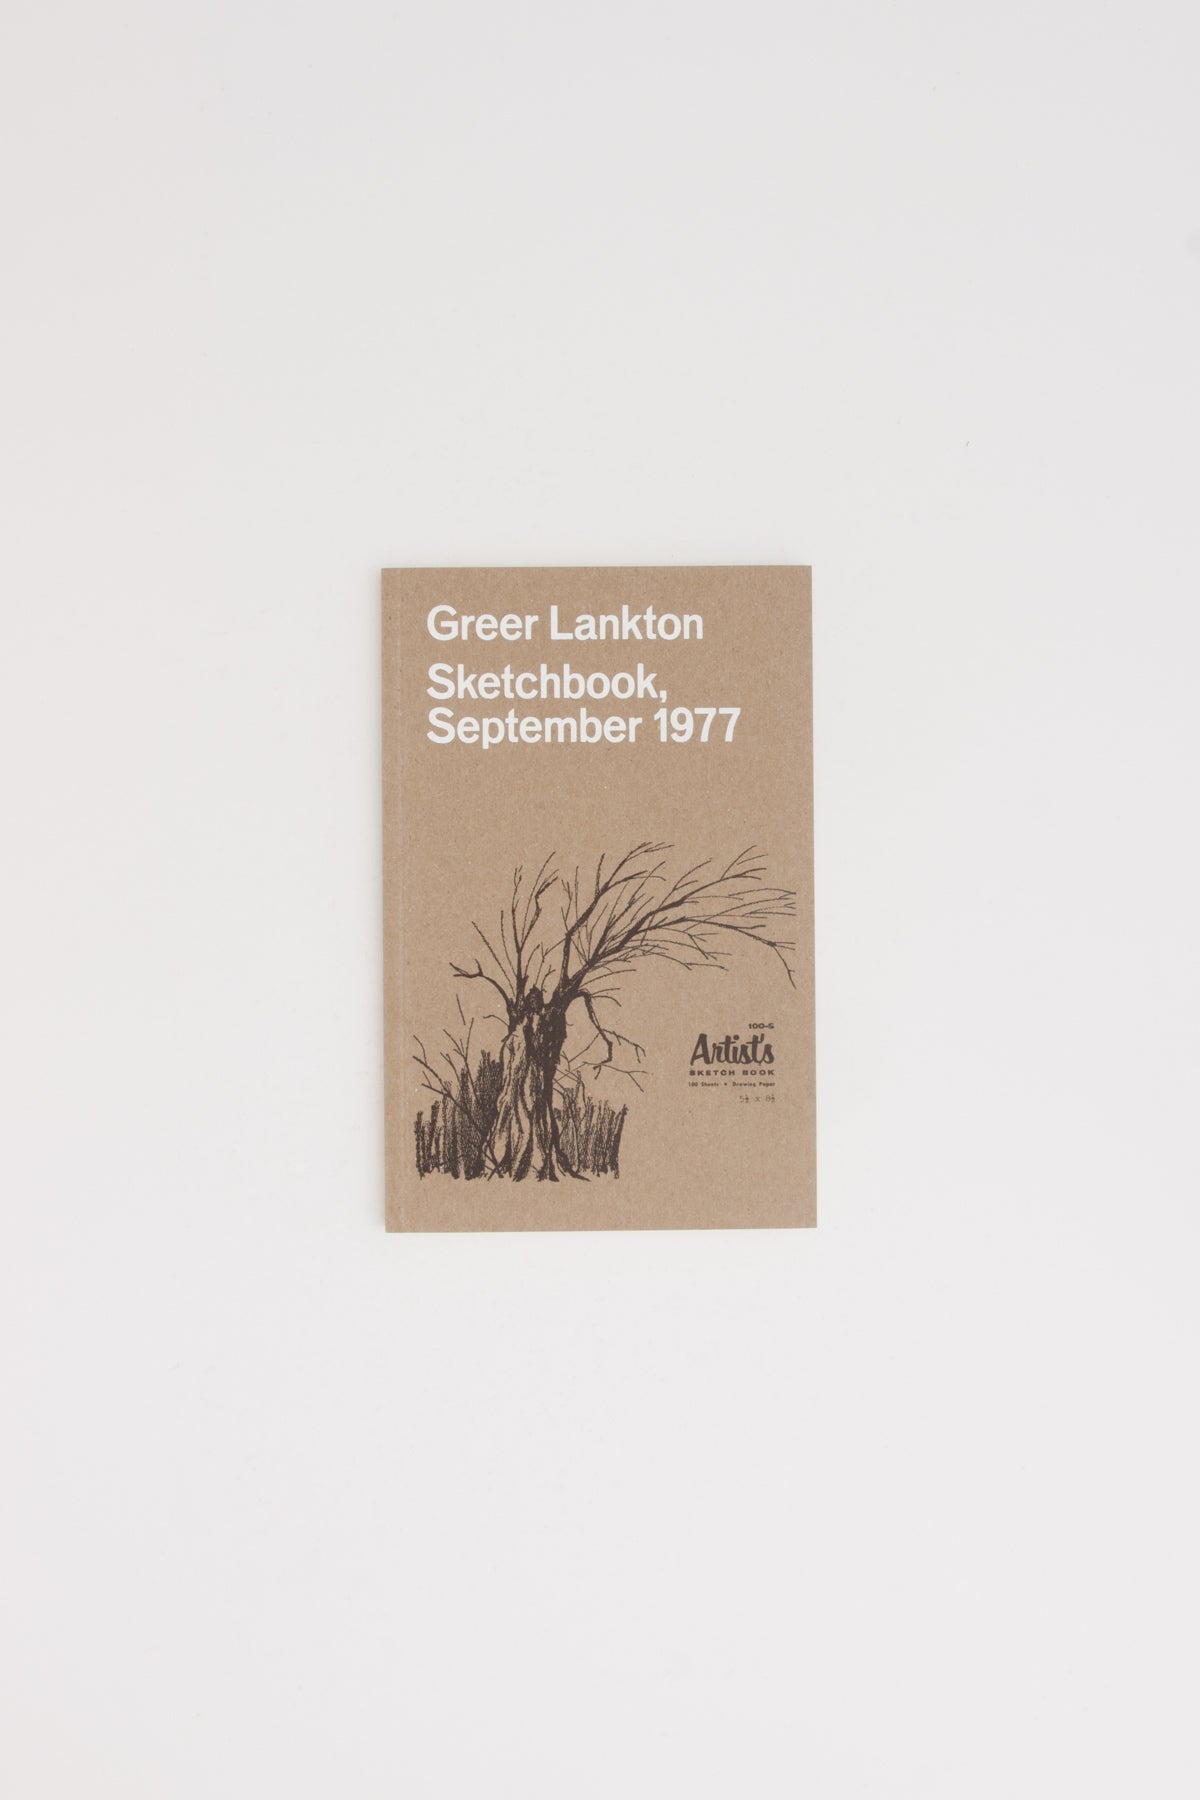 Greer Lankton Sketchbook, September 1977